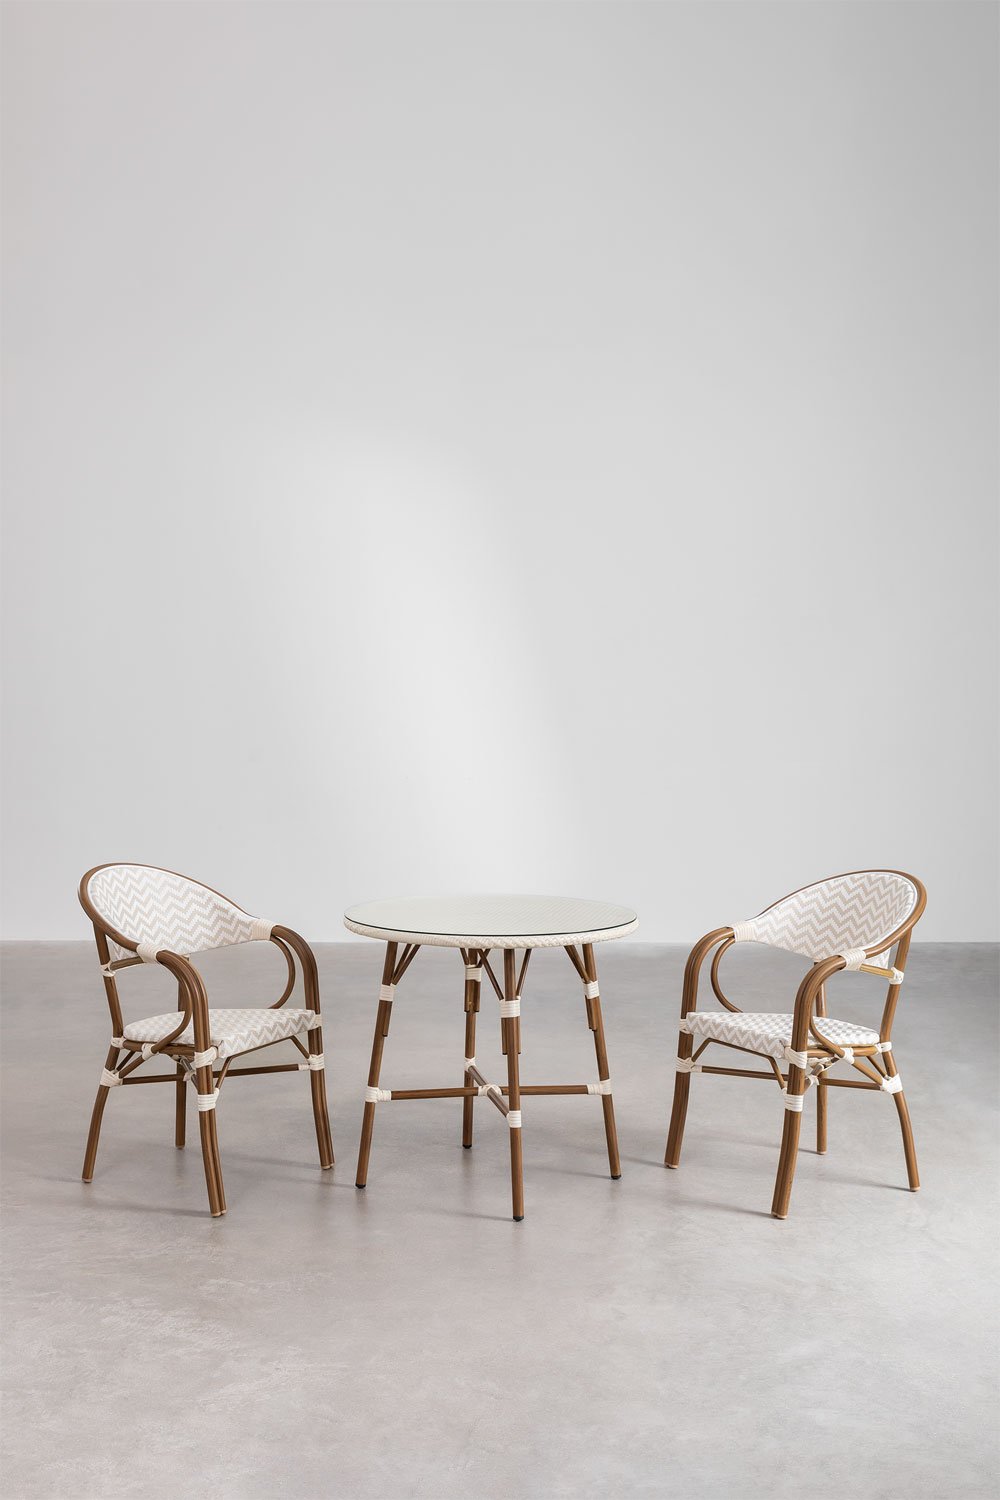 Set van ronde tafel (Ø80 cm) en 2 stapelbare eetkamerstoelen met armleuningen in aluminium Brielle Bistro, galerij beeld 2